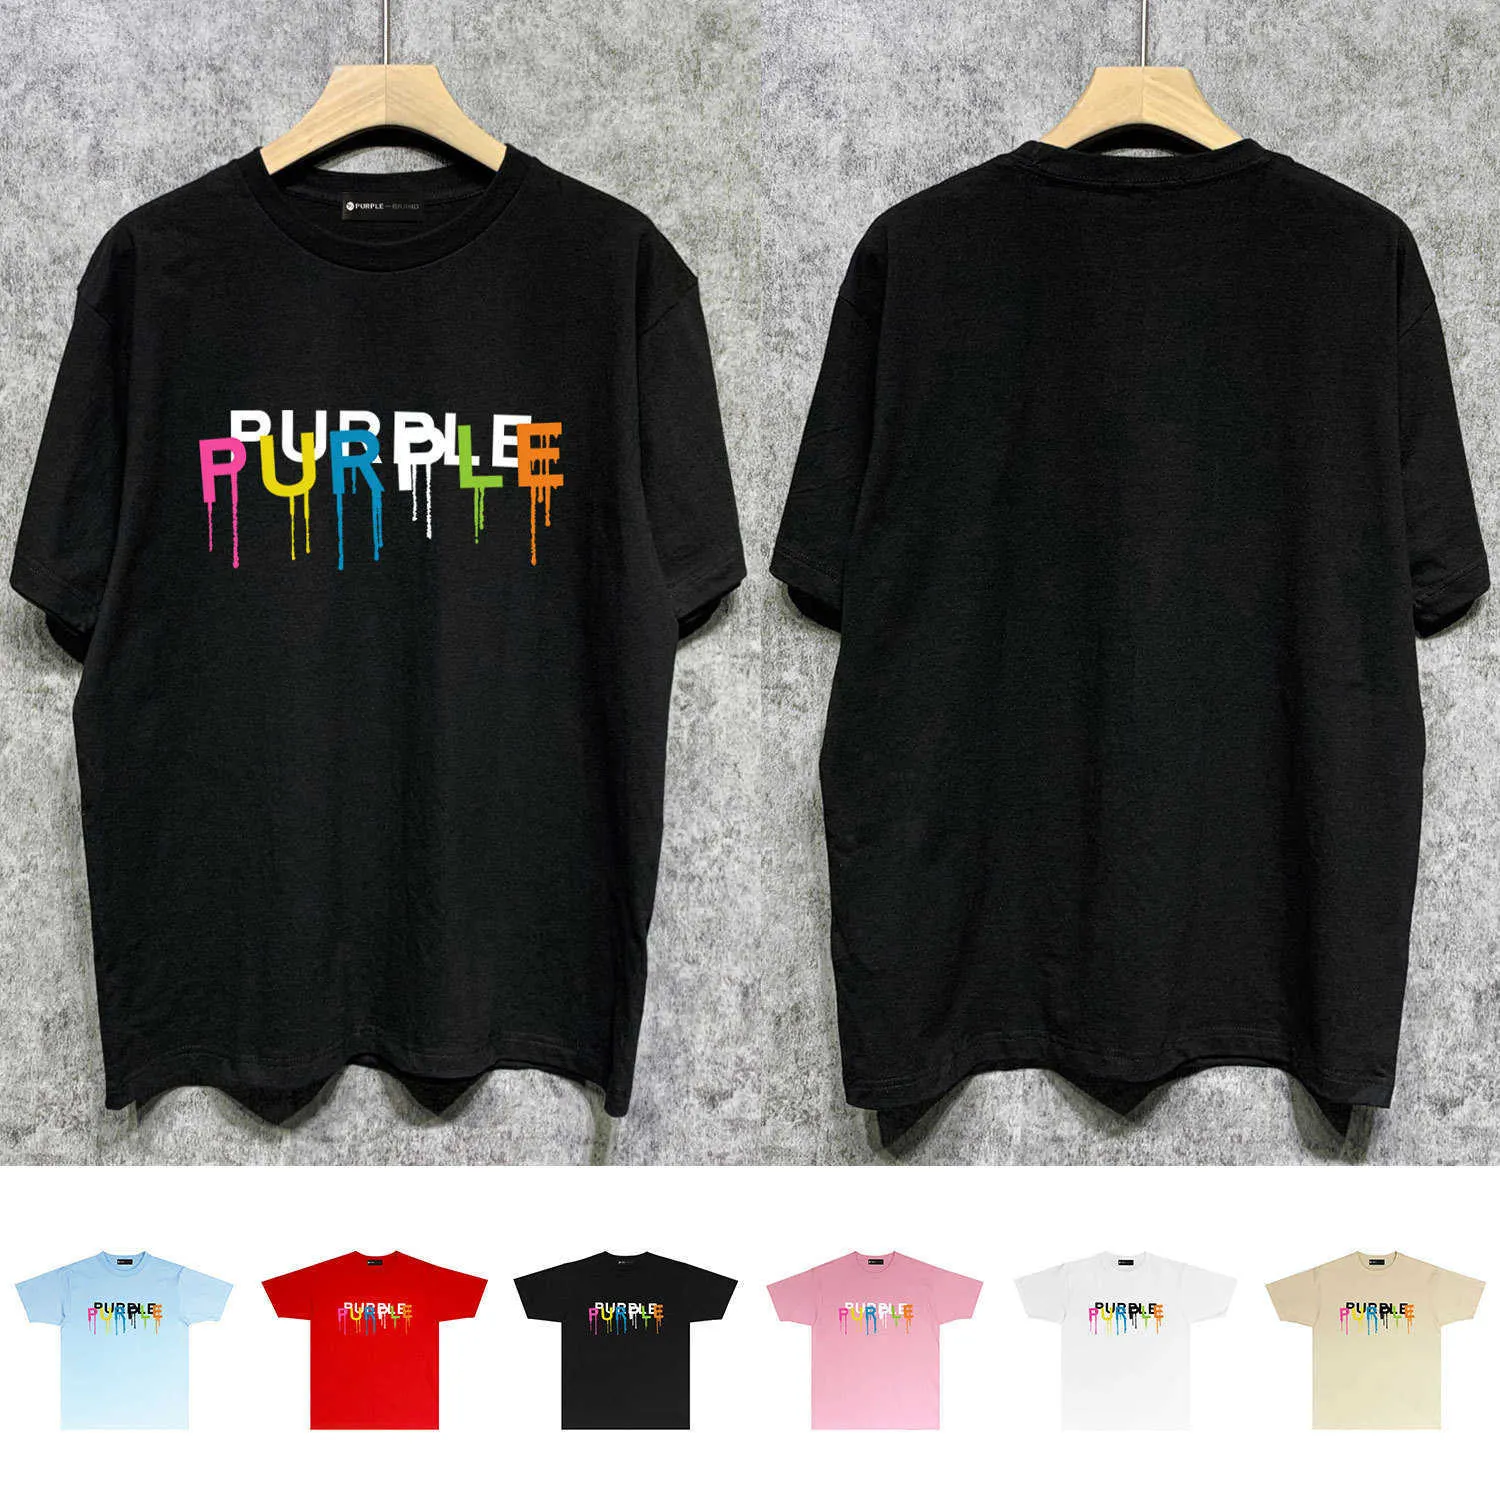 Долгосрочная модная брендовая футболка PURPLE BRAND T SHIRT с короткими рукавами 7D64